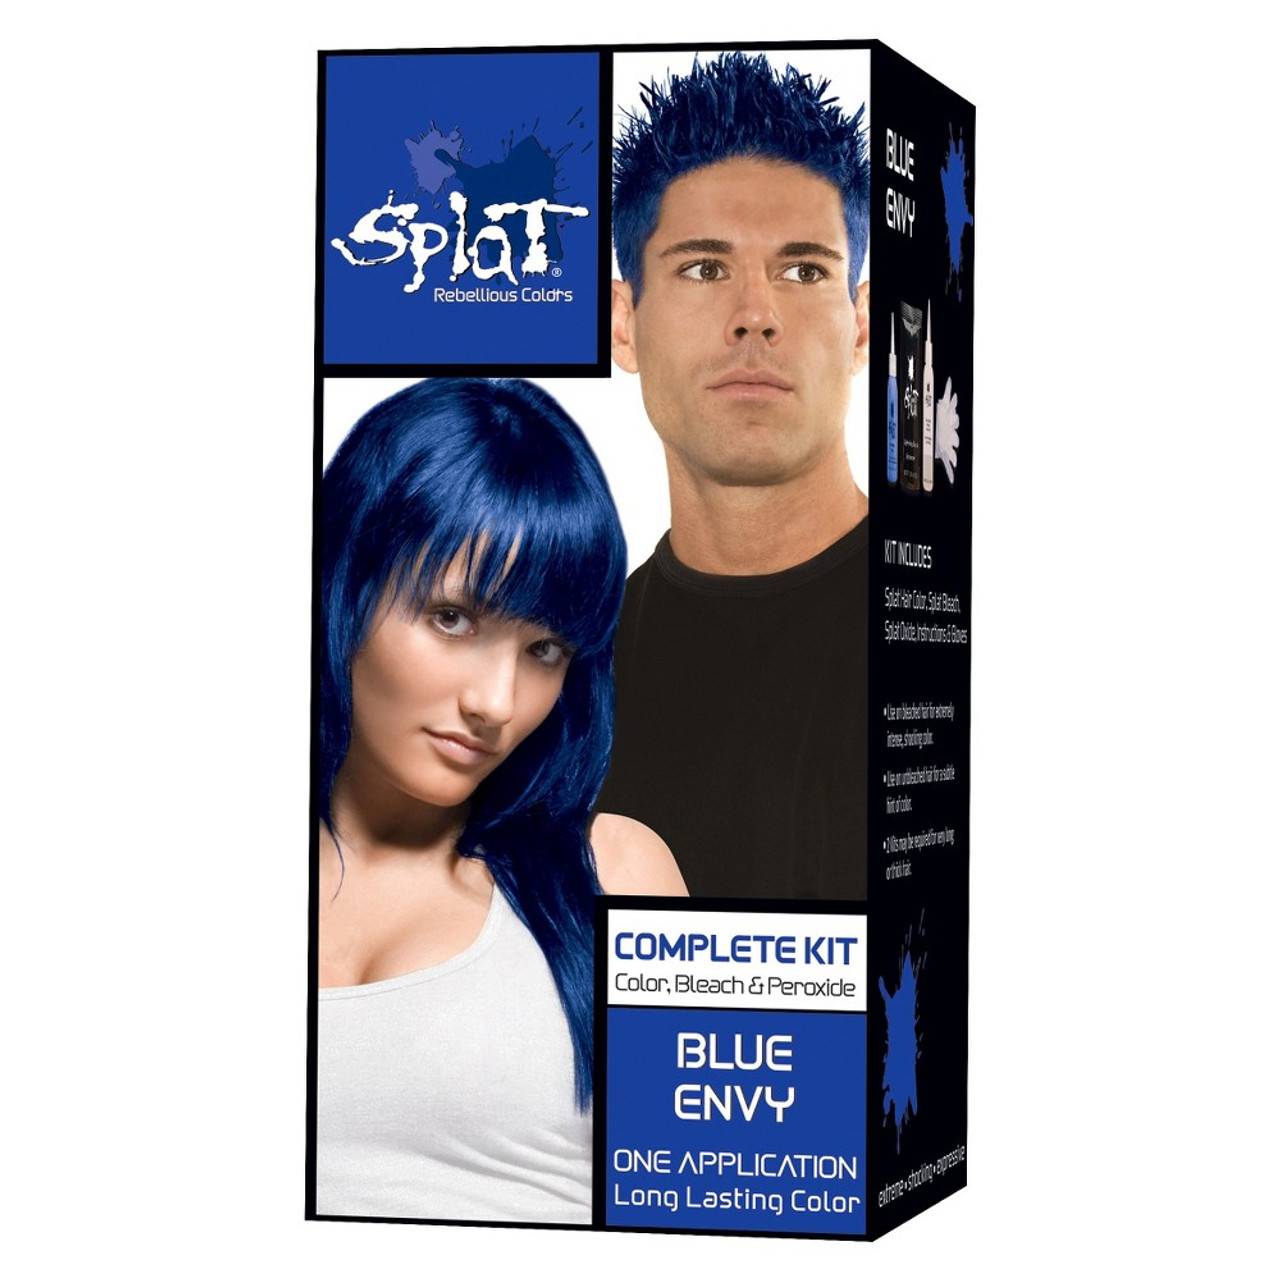 Splat Complete Color Bleach Peroxide Hair Color Kit Blue Envy